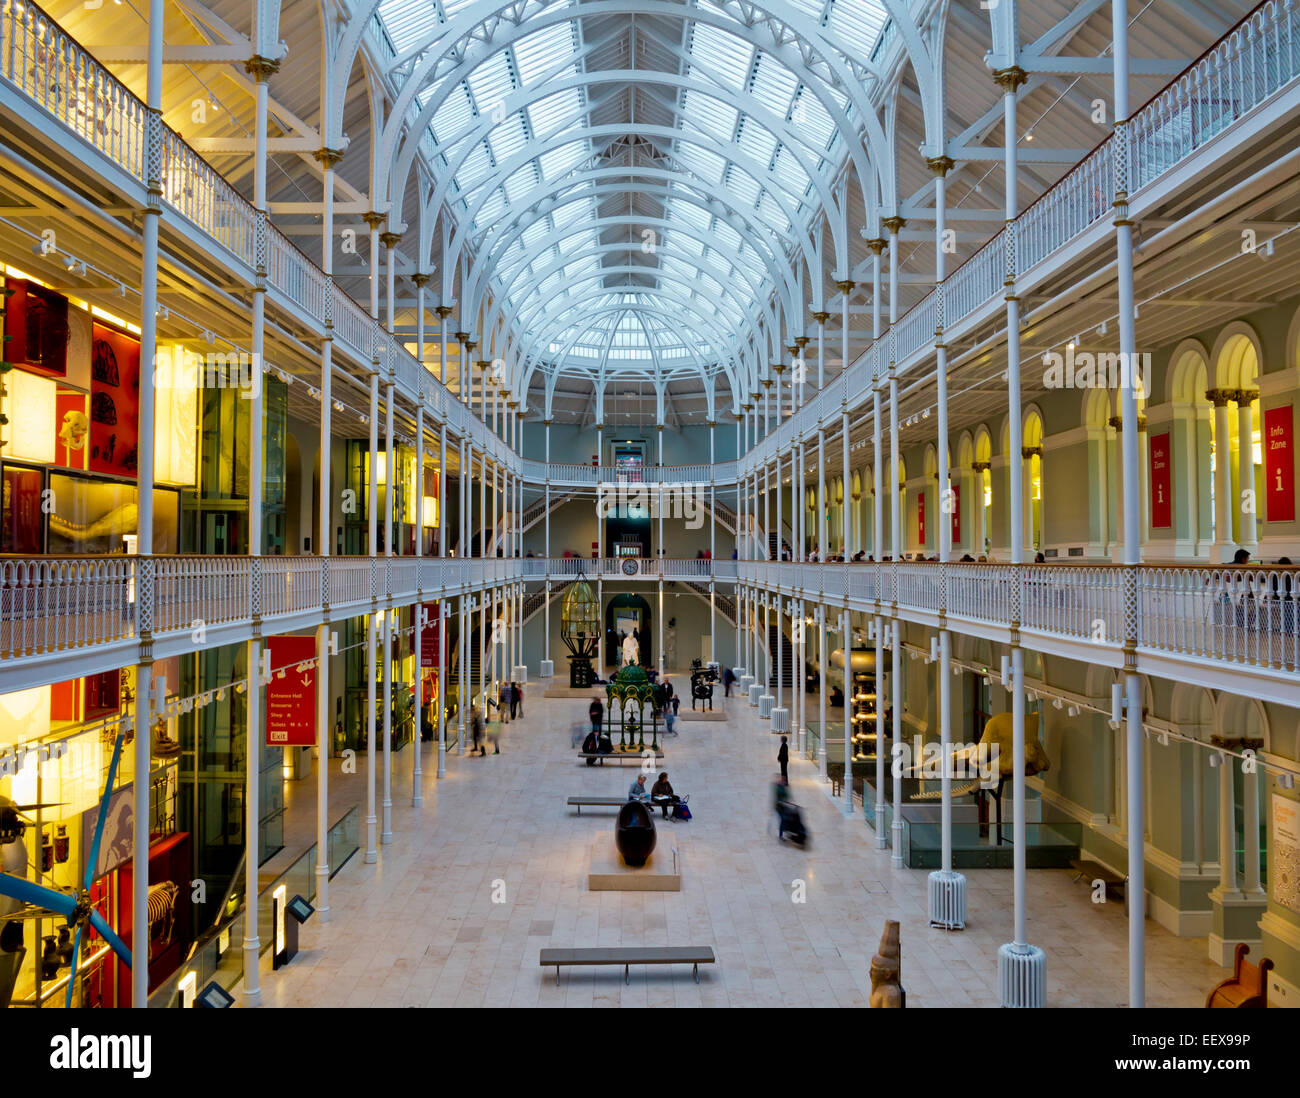 Innenansicht des National Museum of Scotland in Edinburgh City Centre UK zeigt Ausstellungen Galerien und gewölbten Glasdach Stockfoto